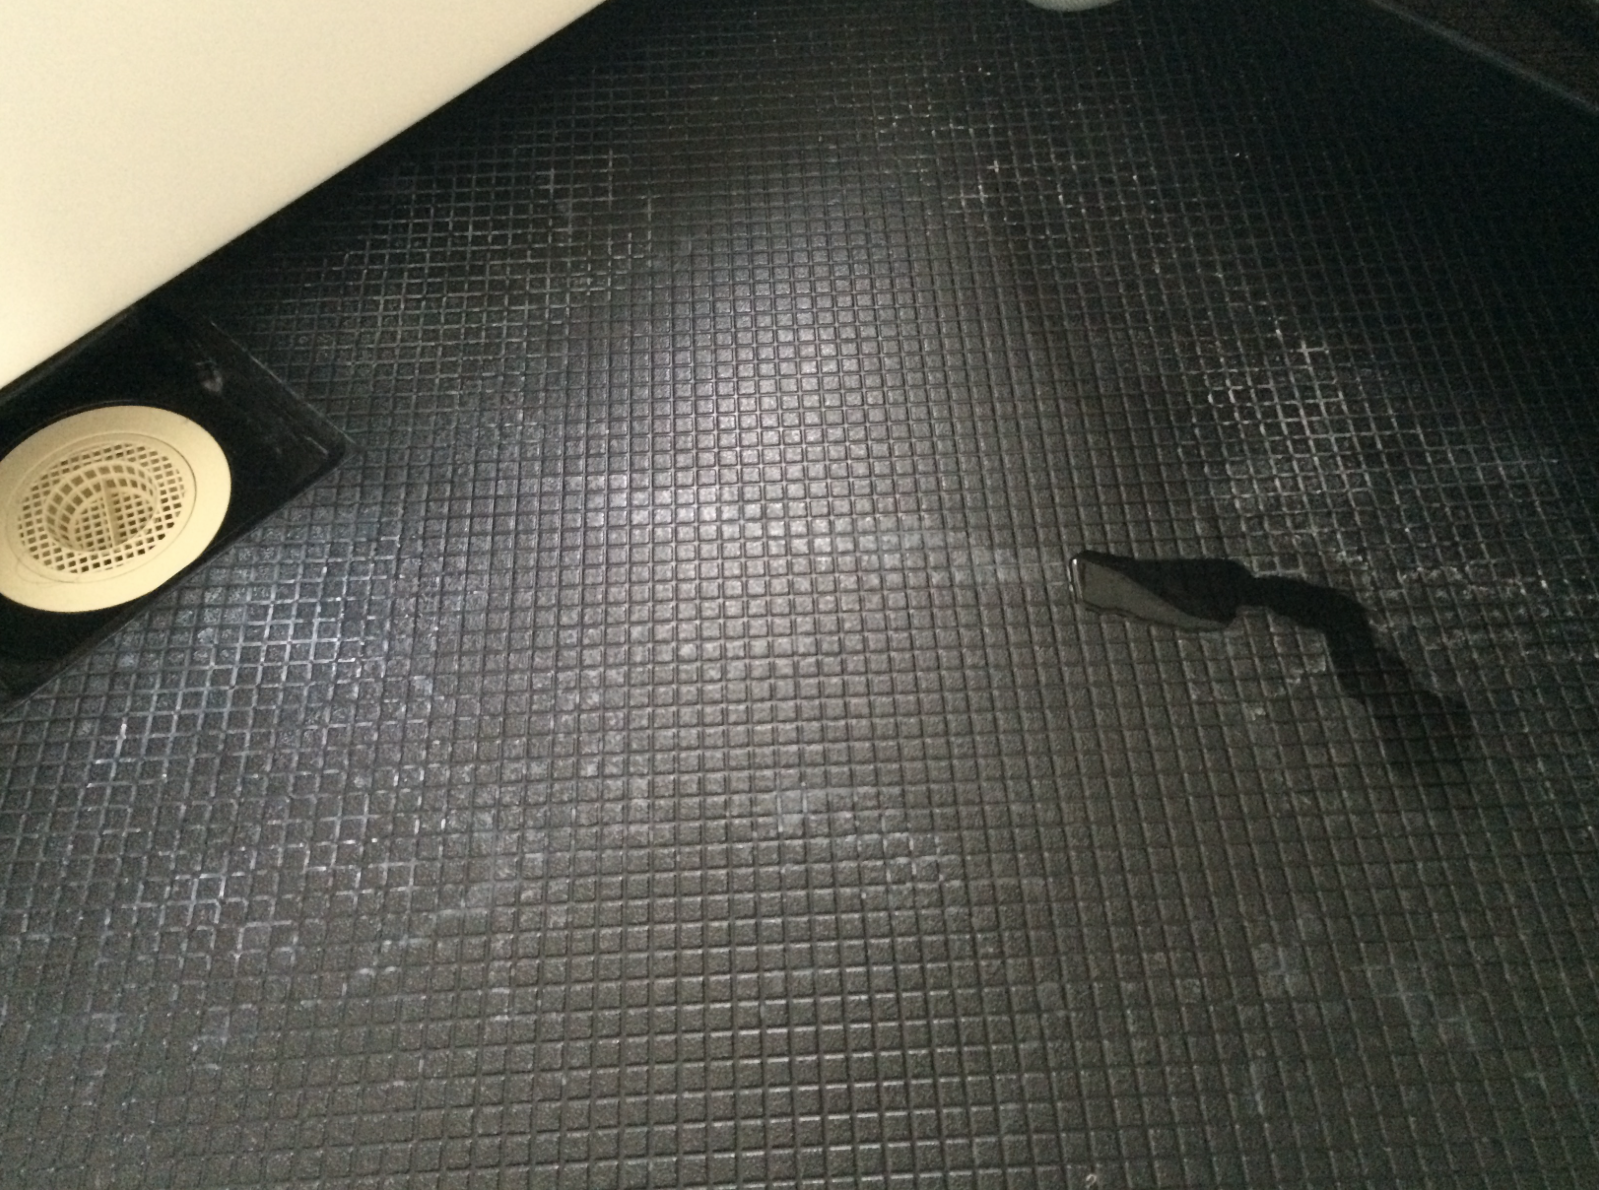 お風呂の床掃除 スマートバスの黒い床の水垢を綺麗に落とす方法 一条工務店i Smartを建てたコスケの新築計画